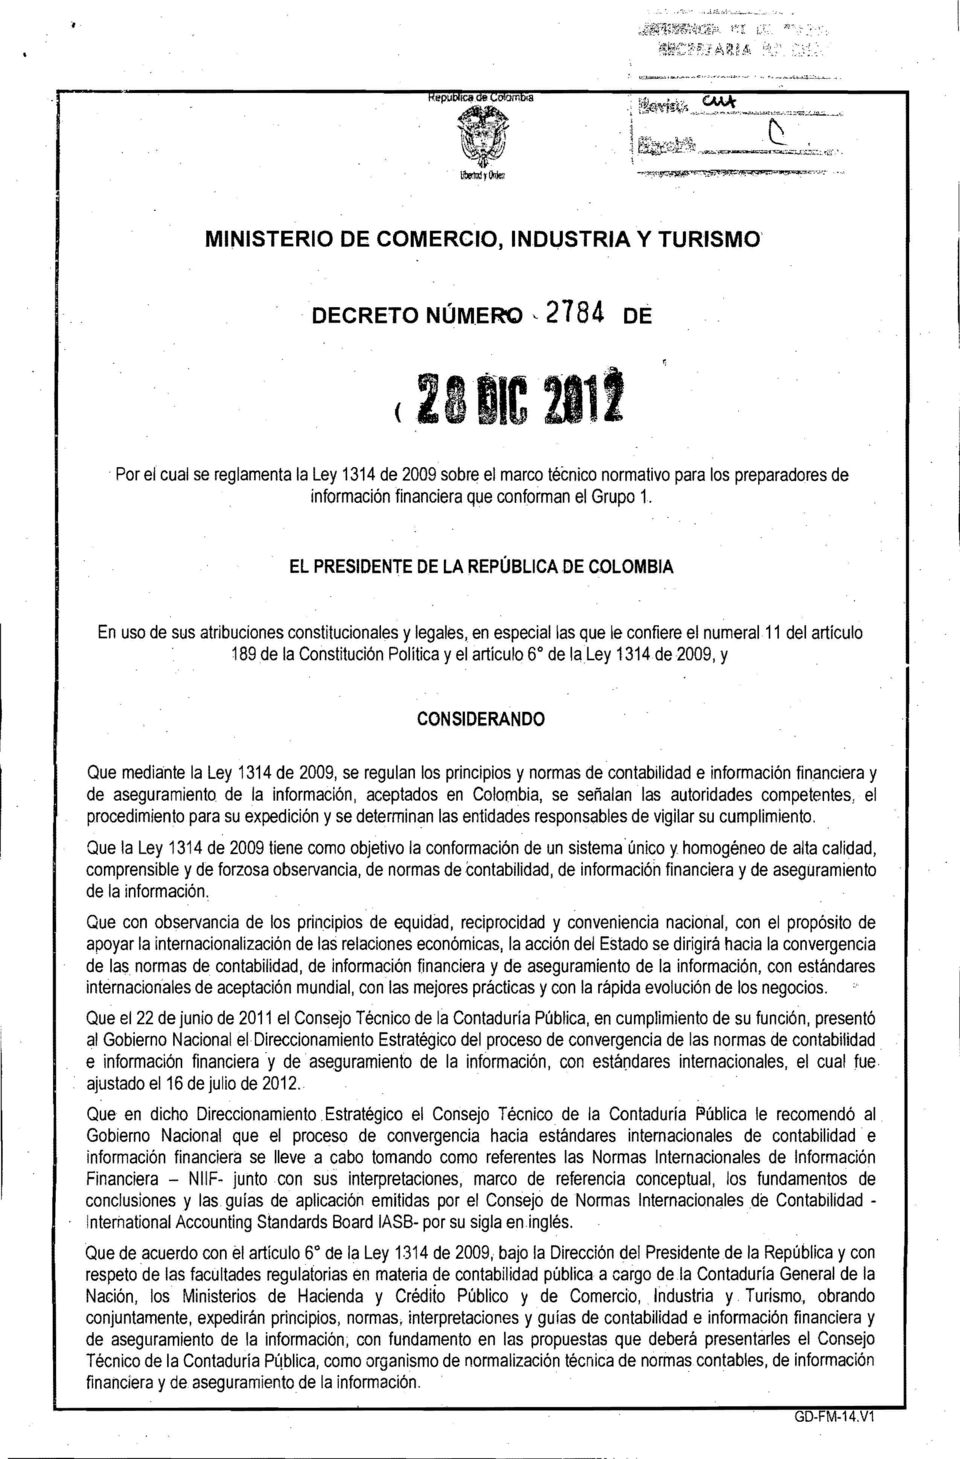 EL PRESIDENTE DE LA REPÚBLICA DE COLOMBIA En uso de sus atribuciones constitucionales y legales, en especial las que le confiere el numeral 11 del artículo 189 de la Constitución Política y el